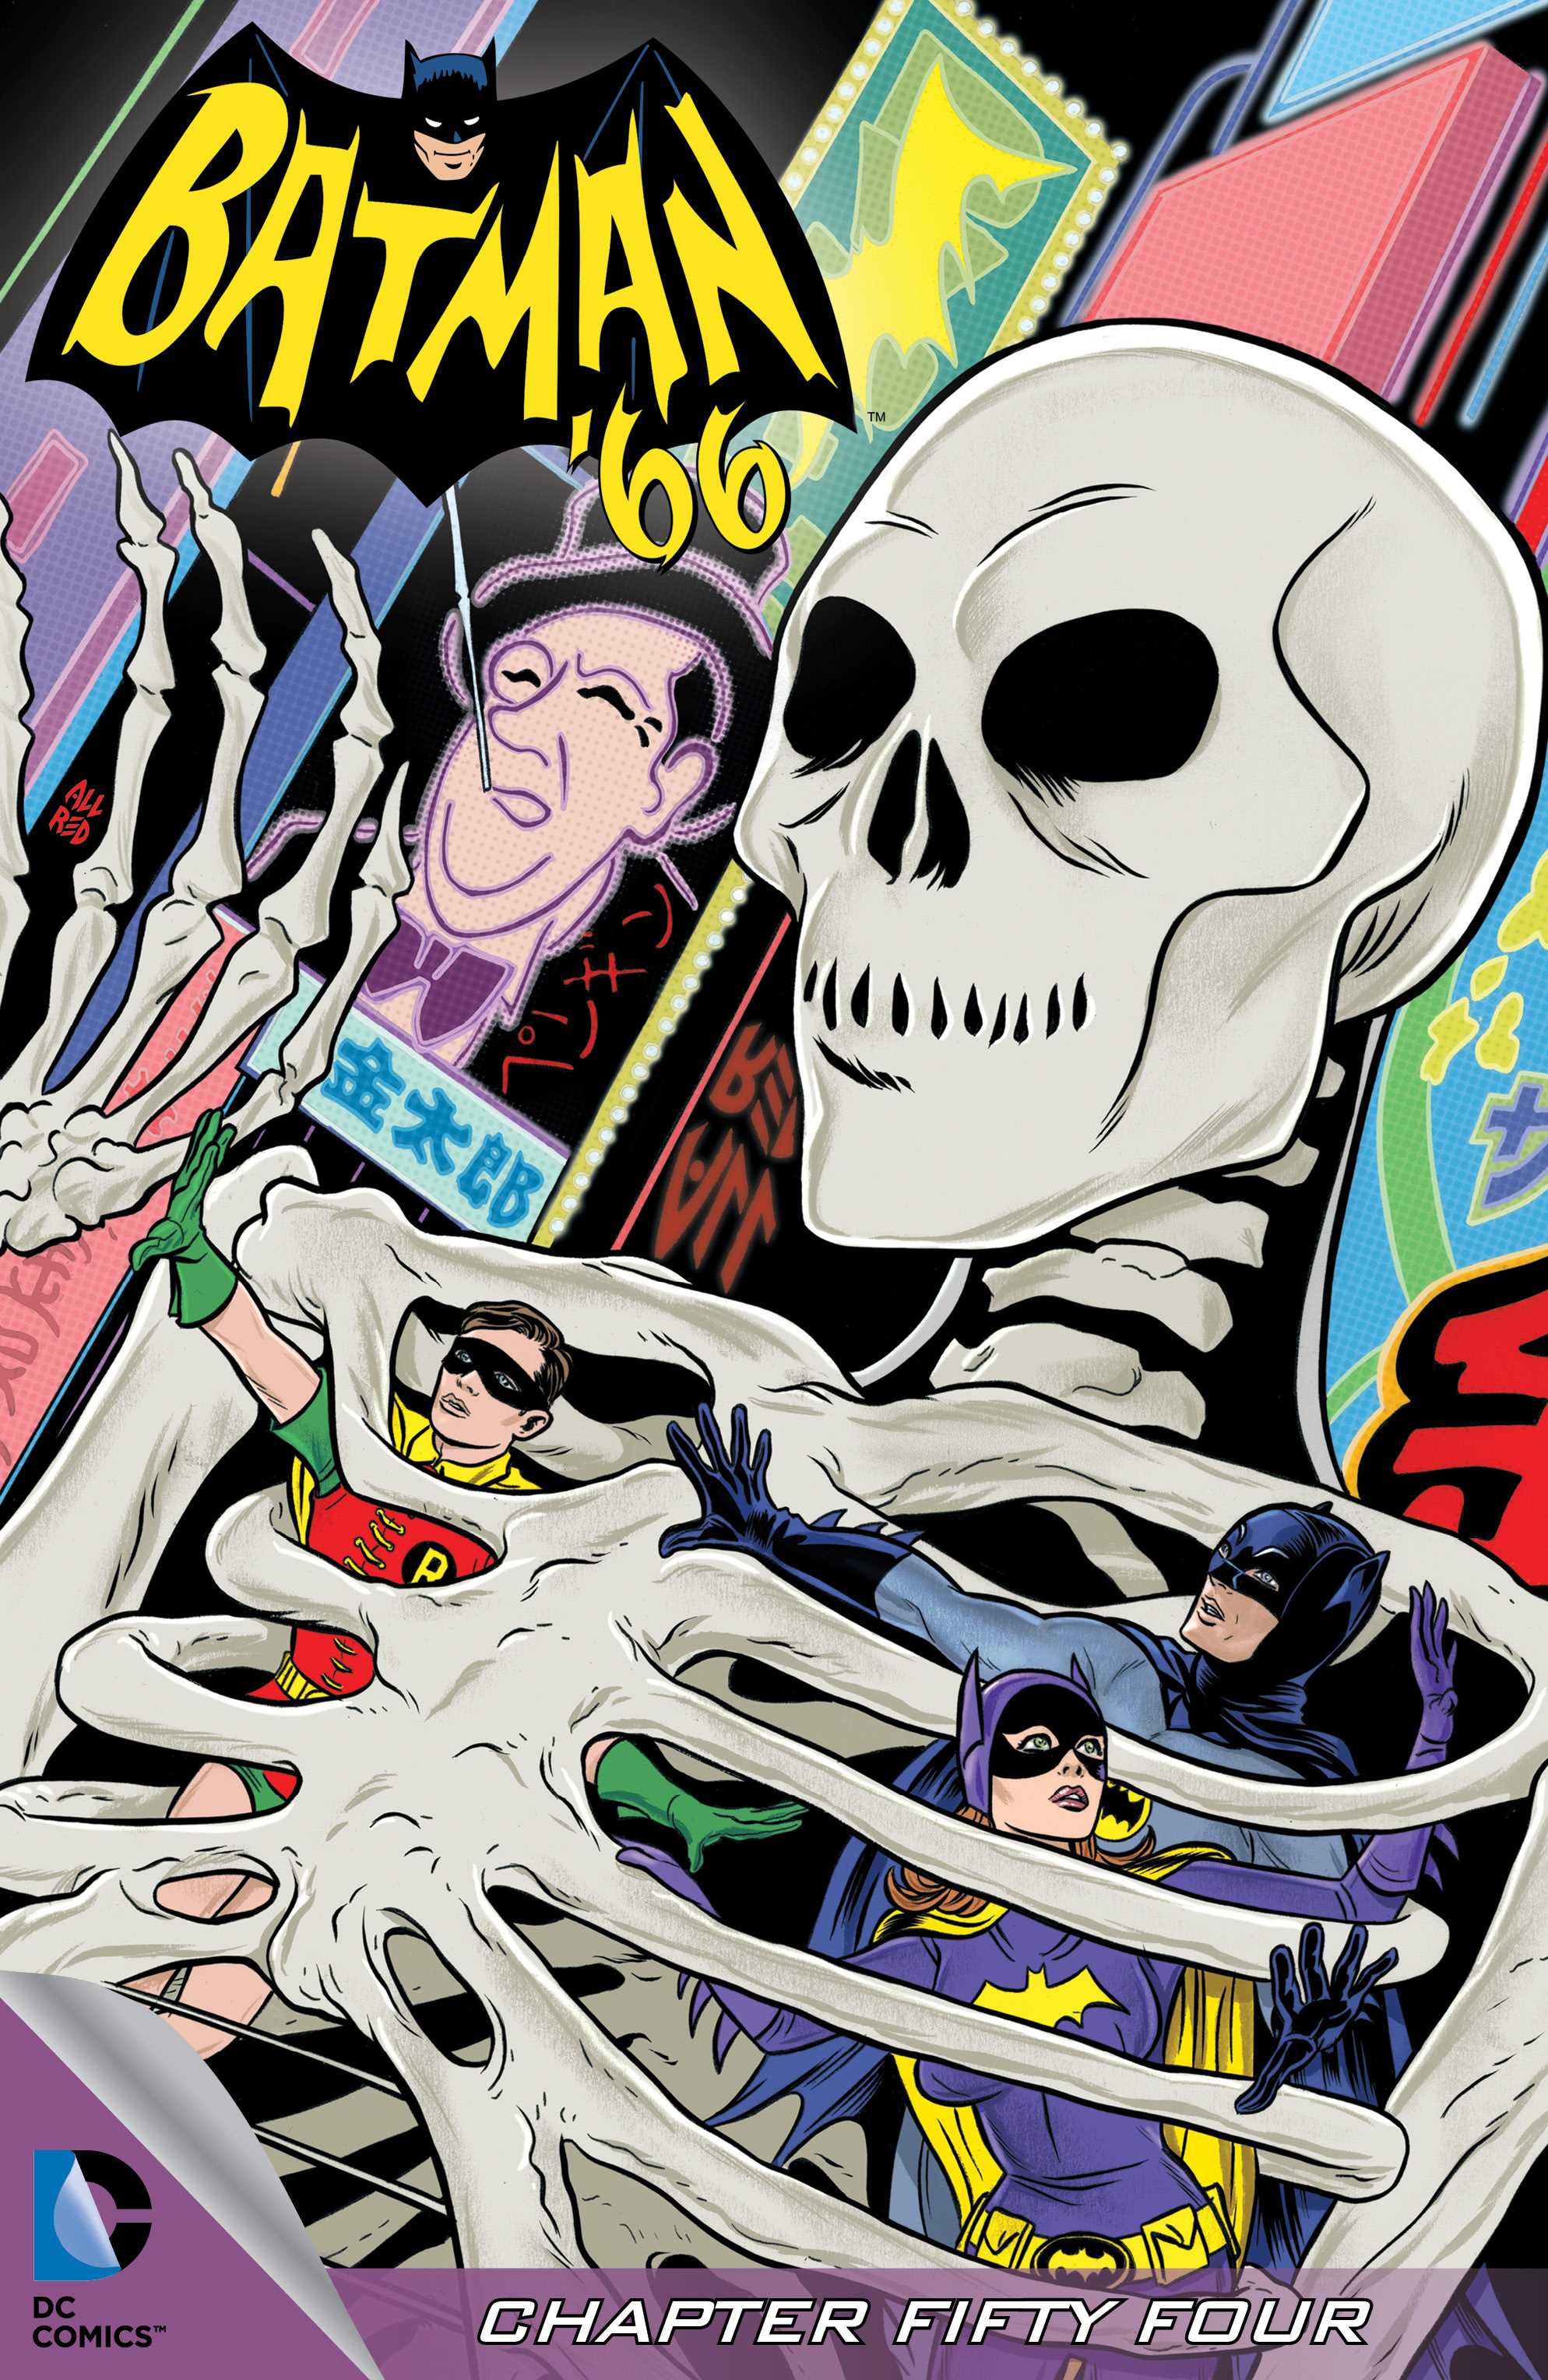 EXCLUSIVE Preview: BATMAN '66 Meets LORD DEATH MAN! | 13th Dimension,  Comics, Creators, Culture